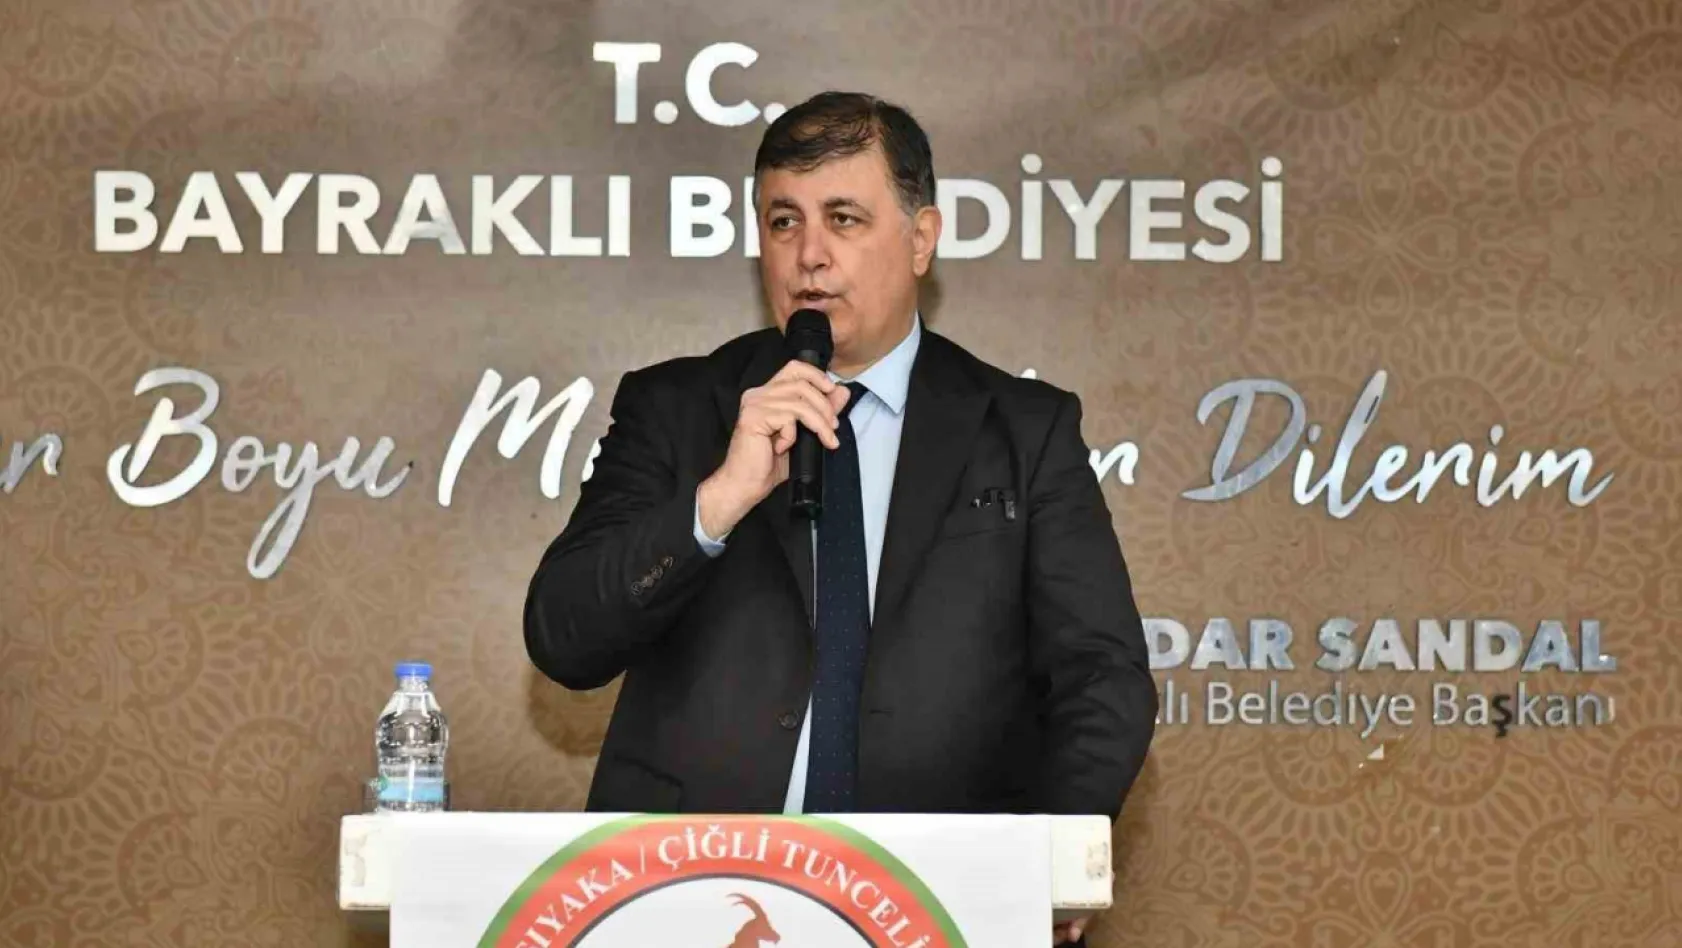 Ekrem İmamoğlu'na destek veren Tunç Soyer'e İzmir adayı Cemil Tugay'dan sitem